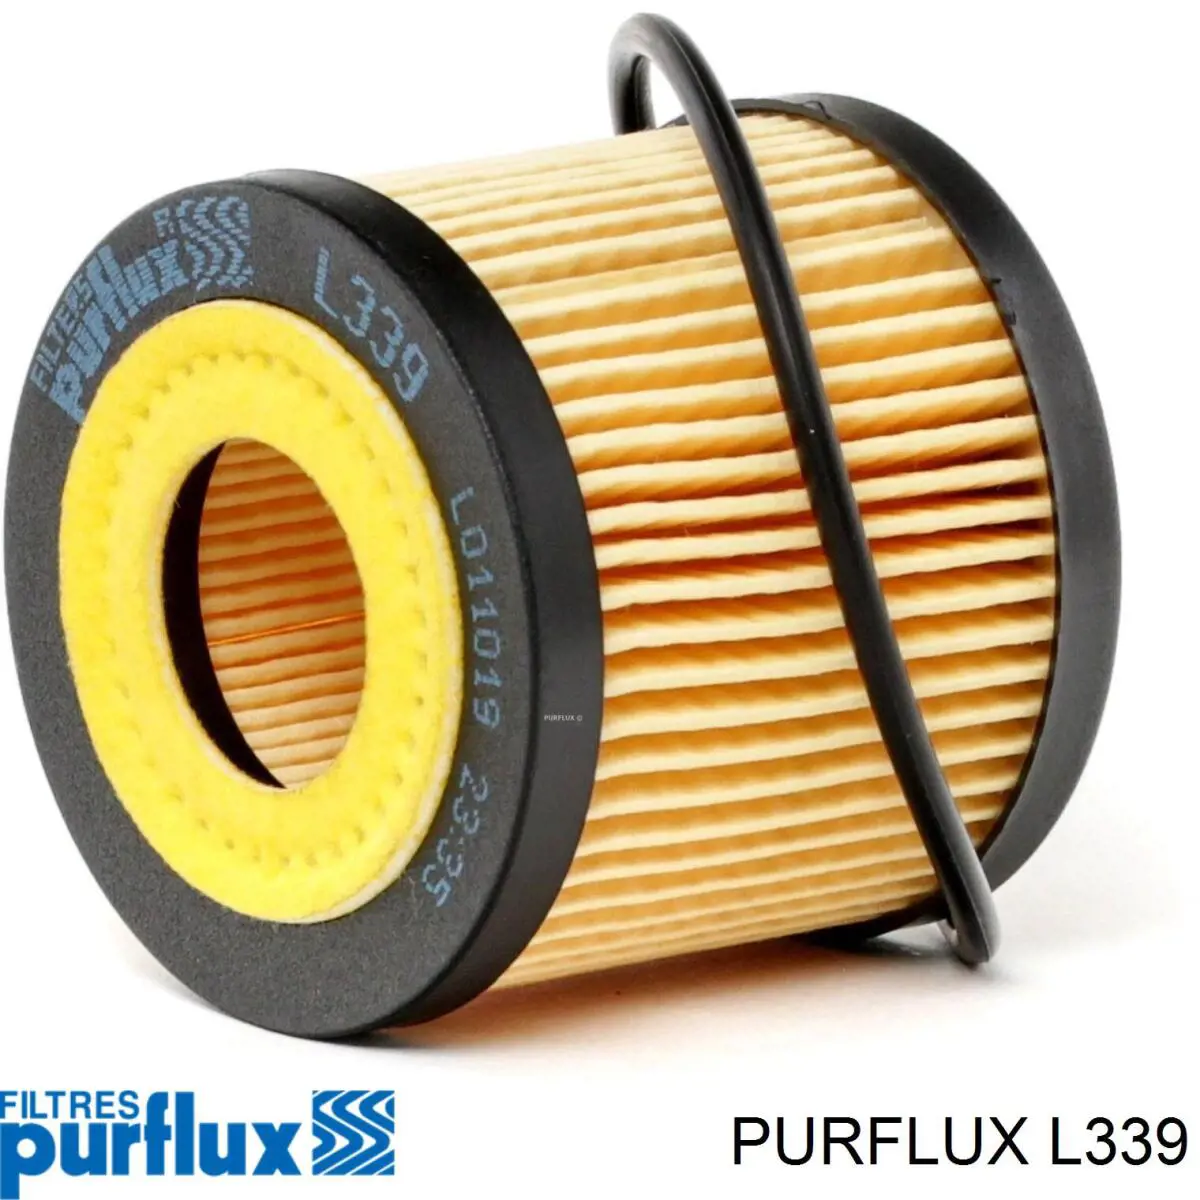 L339 Purflux filtro de aceite